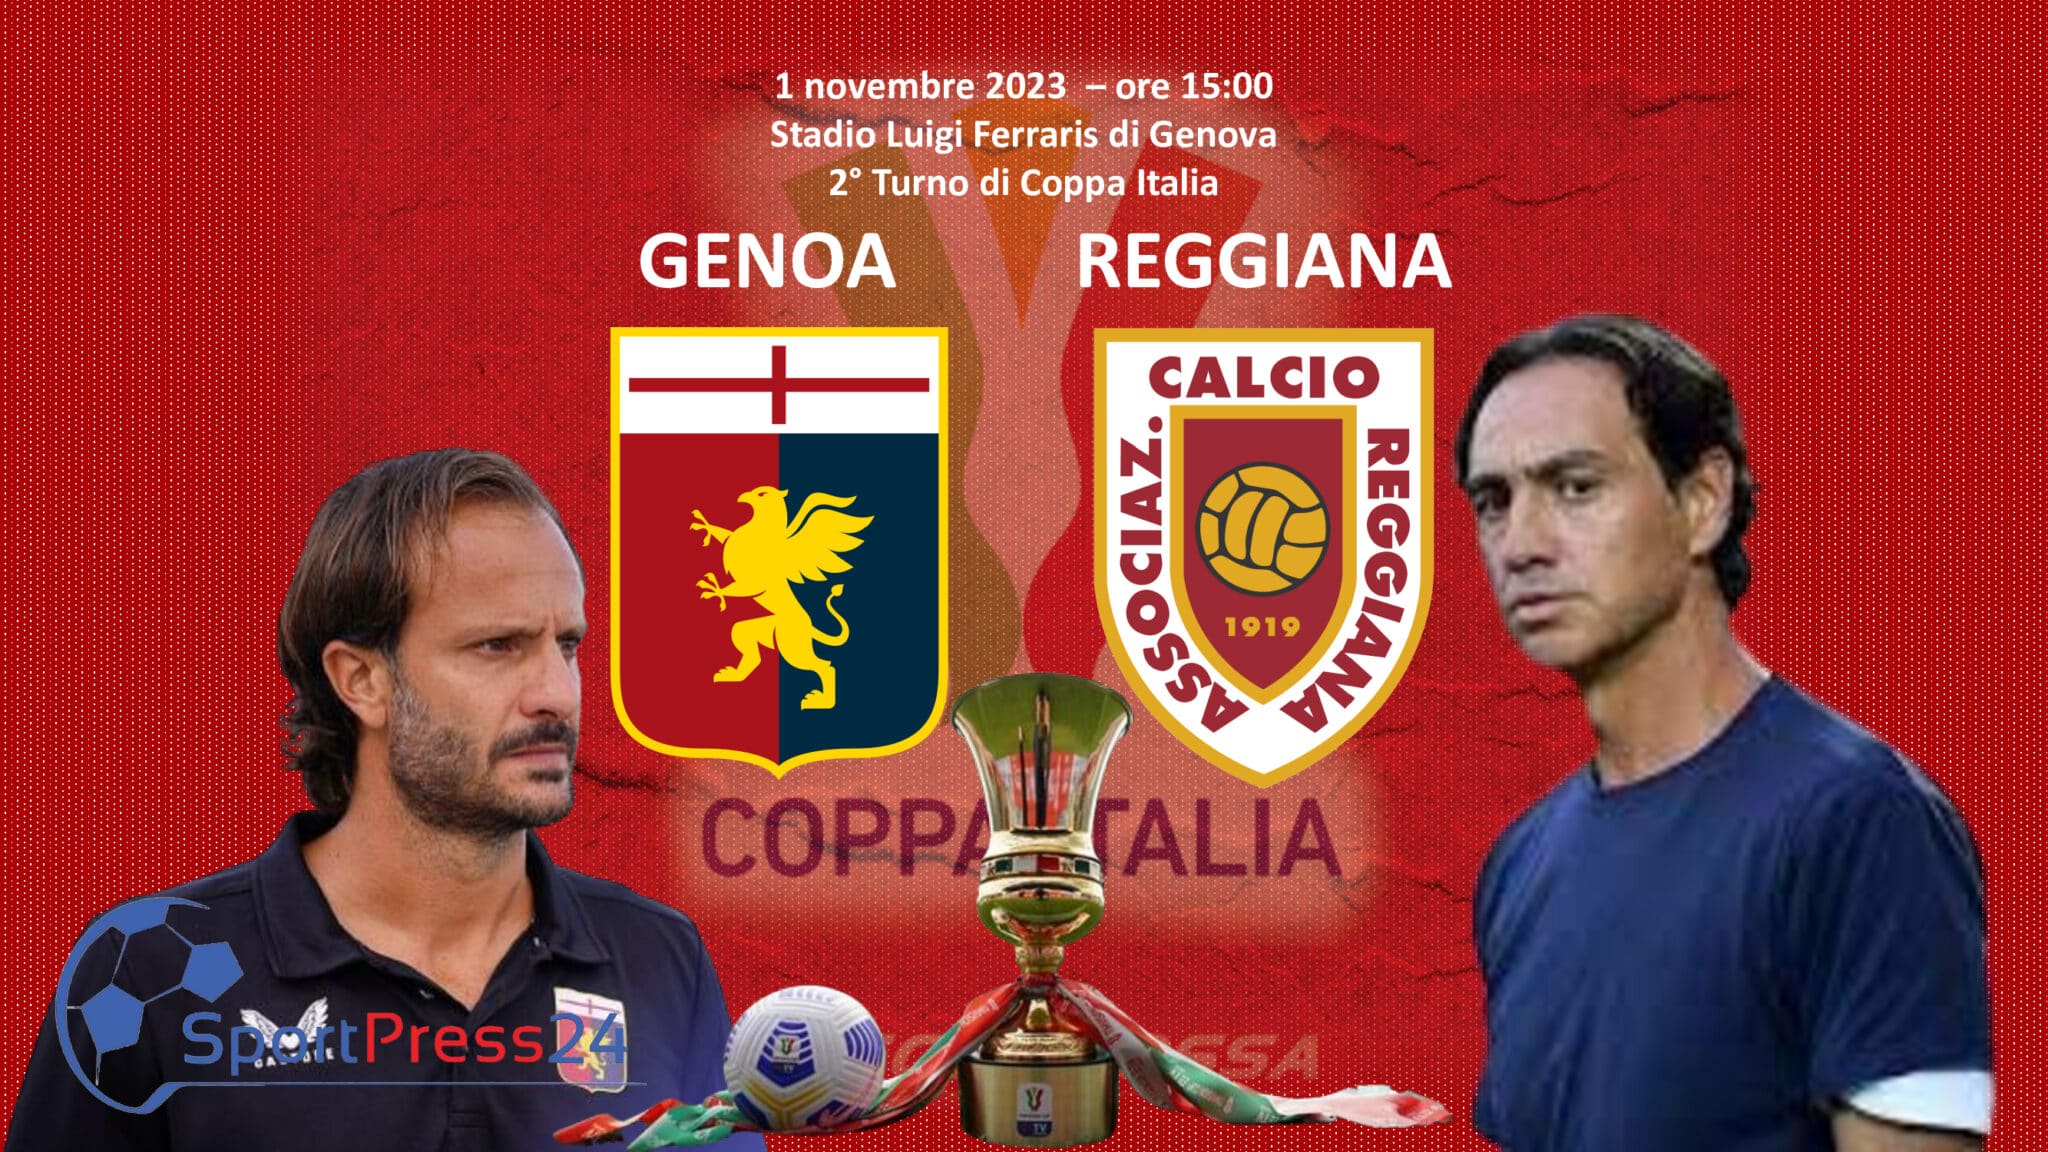 Genoa beat Reggiana in the Coppa Italia thanks to Malinowski's assist in  2023